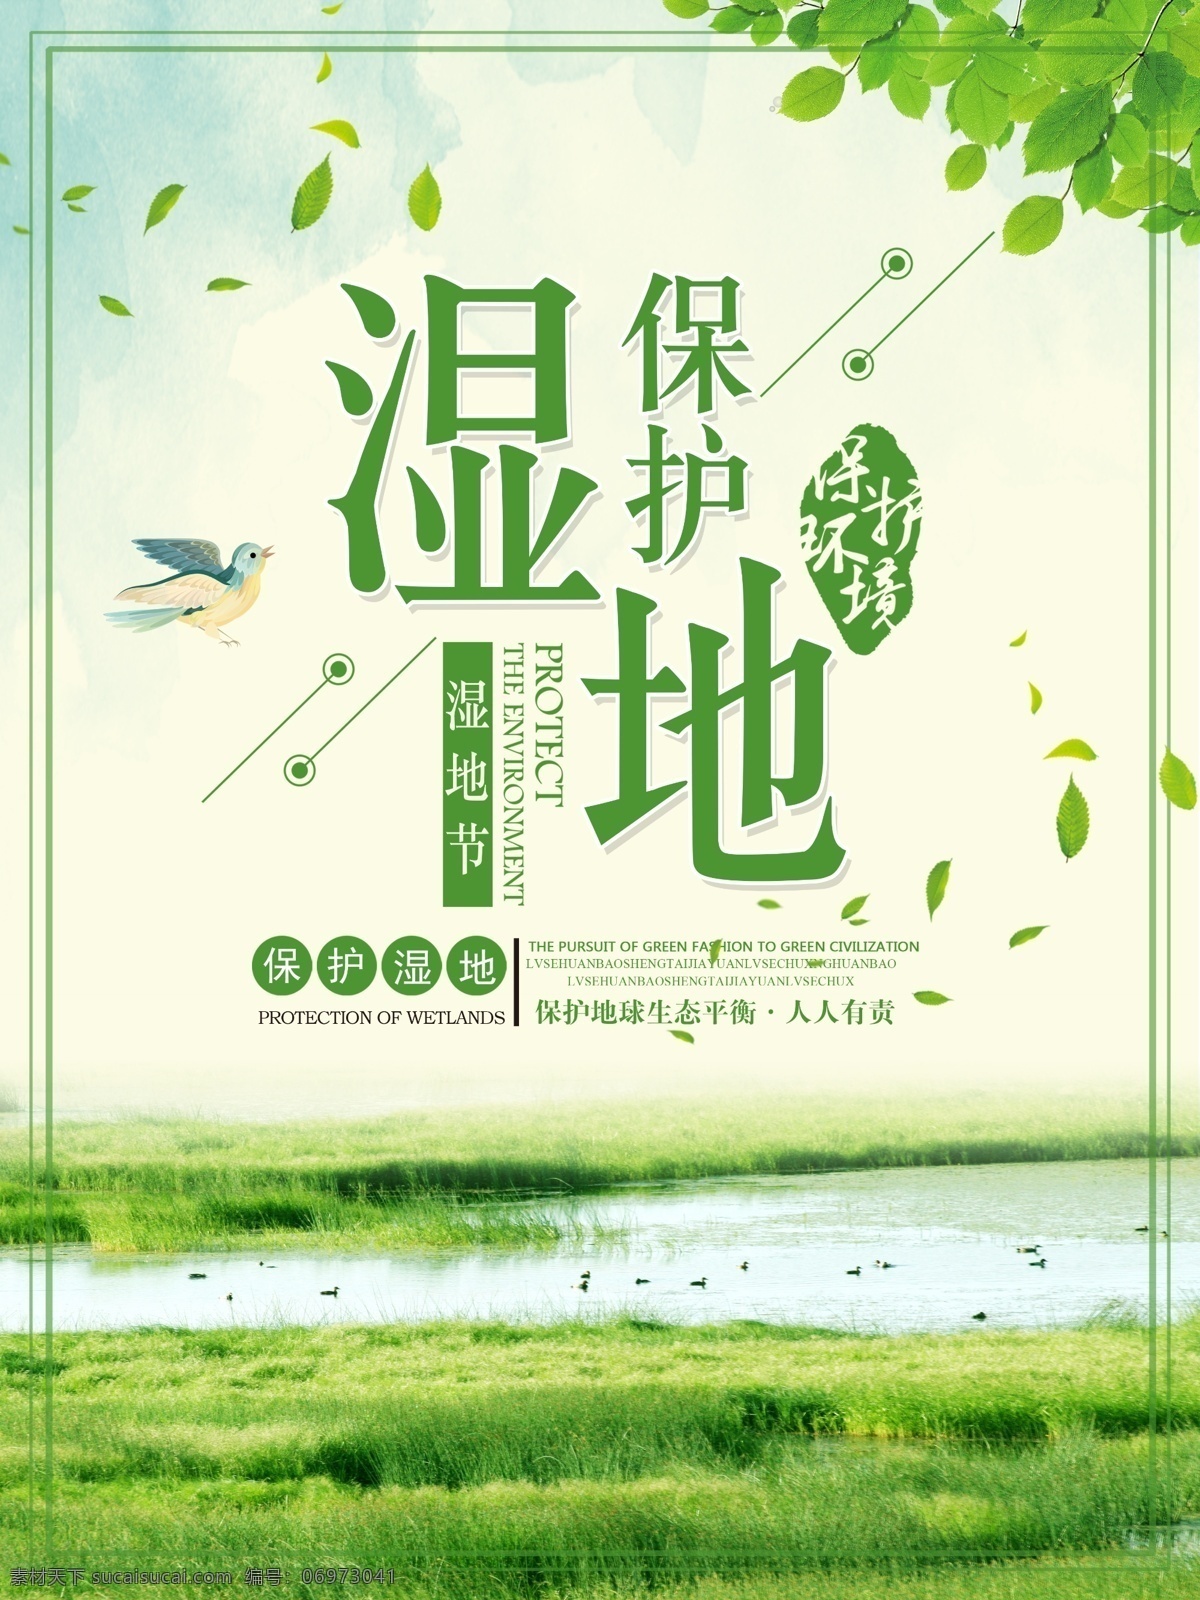 绿色 简约 清新 保护 湿地 生态环境 节 海报 爱护地球 保护生态环境 保护湿地 节日 湿地节